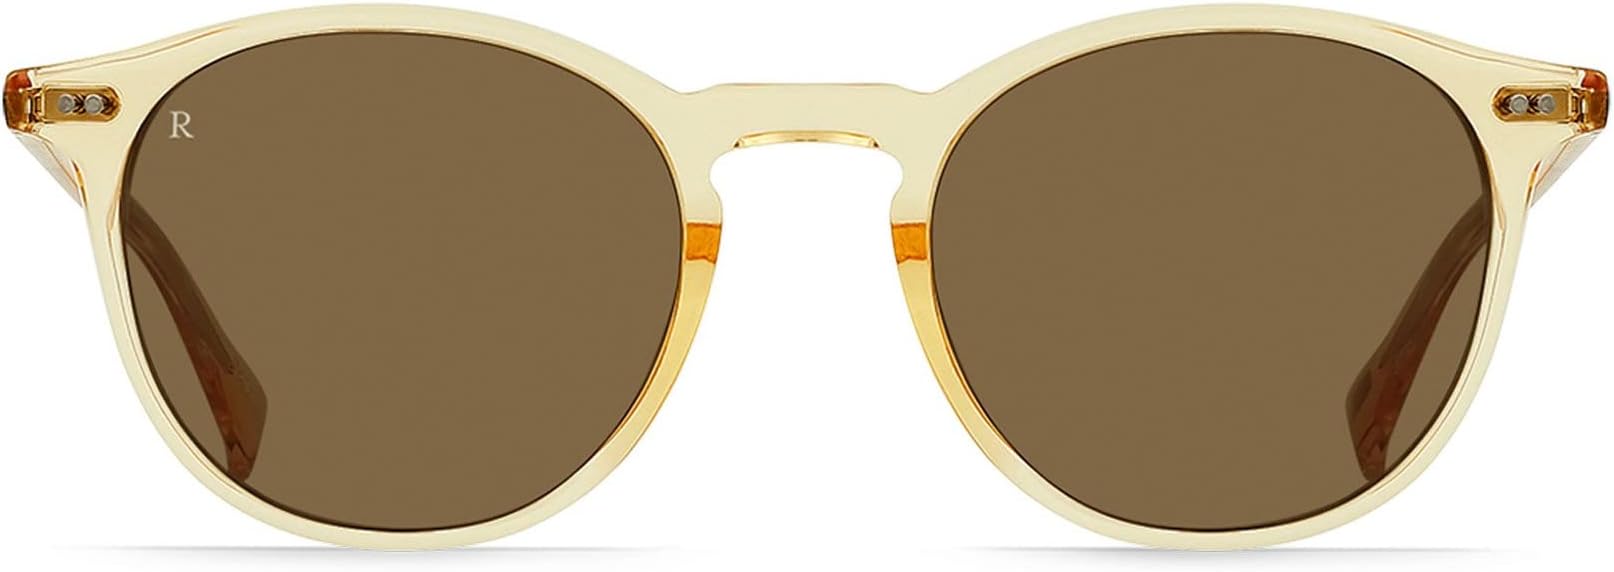 Солнцезащитные очки Basq 50 RAEN Optics, цвет Champagne Crystal/Suntan